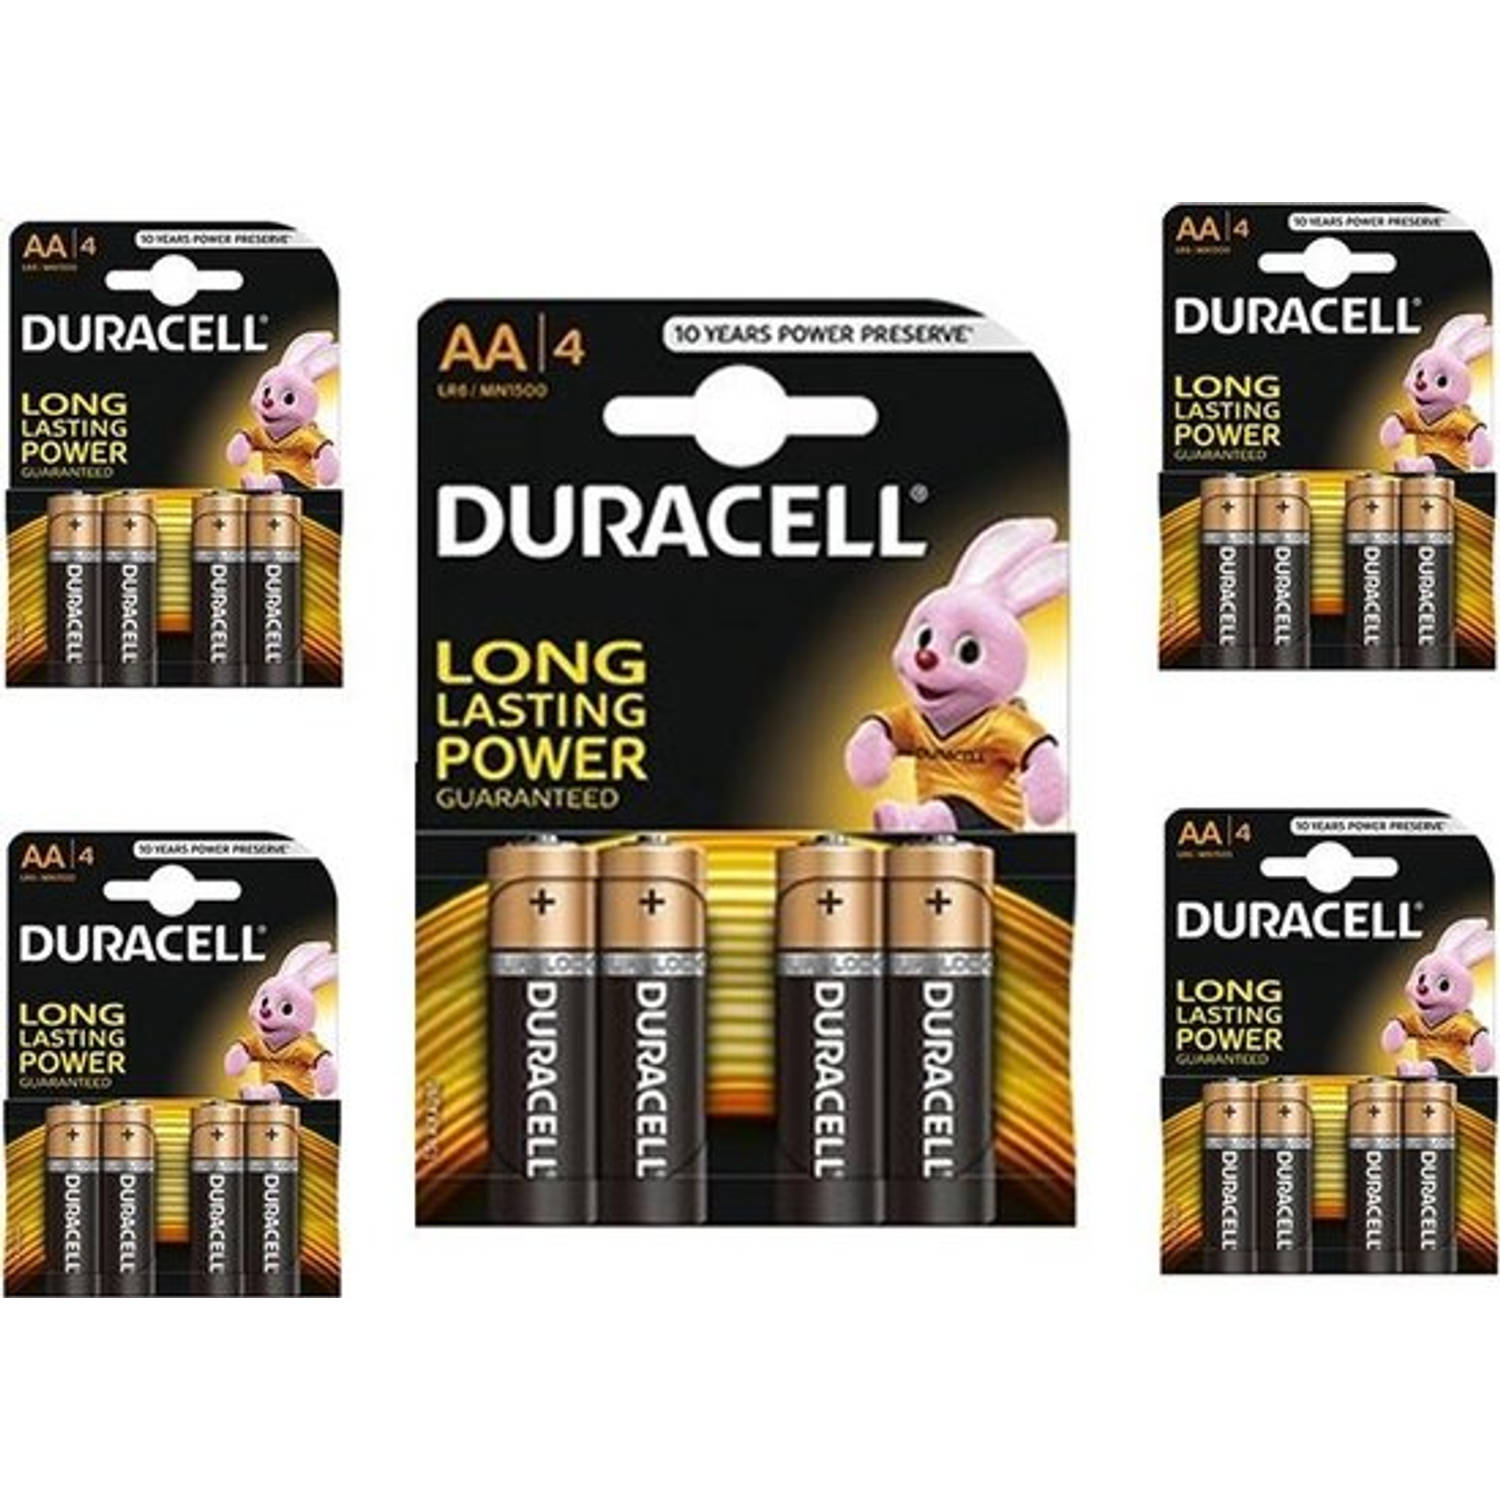 20 Stuks (5 Blisters a 4st) - Duracell Basic LR6 / AA / R6 / MN 1500 1.5V Alkaline batterij